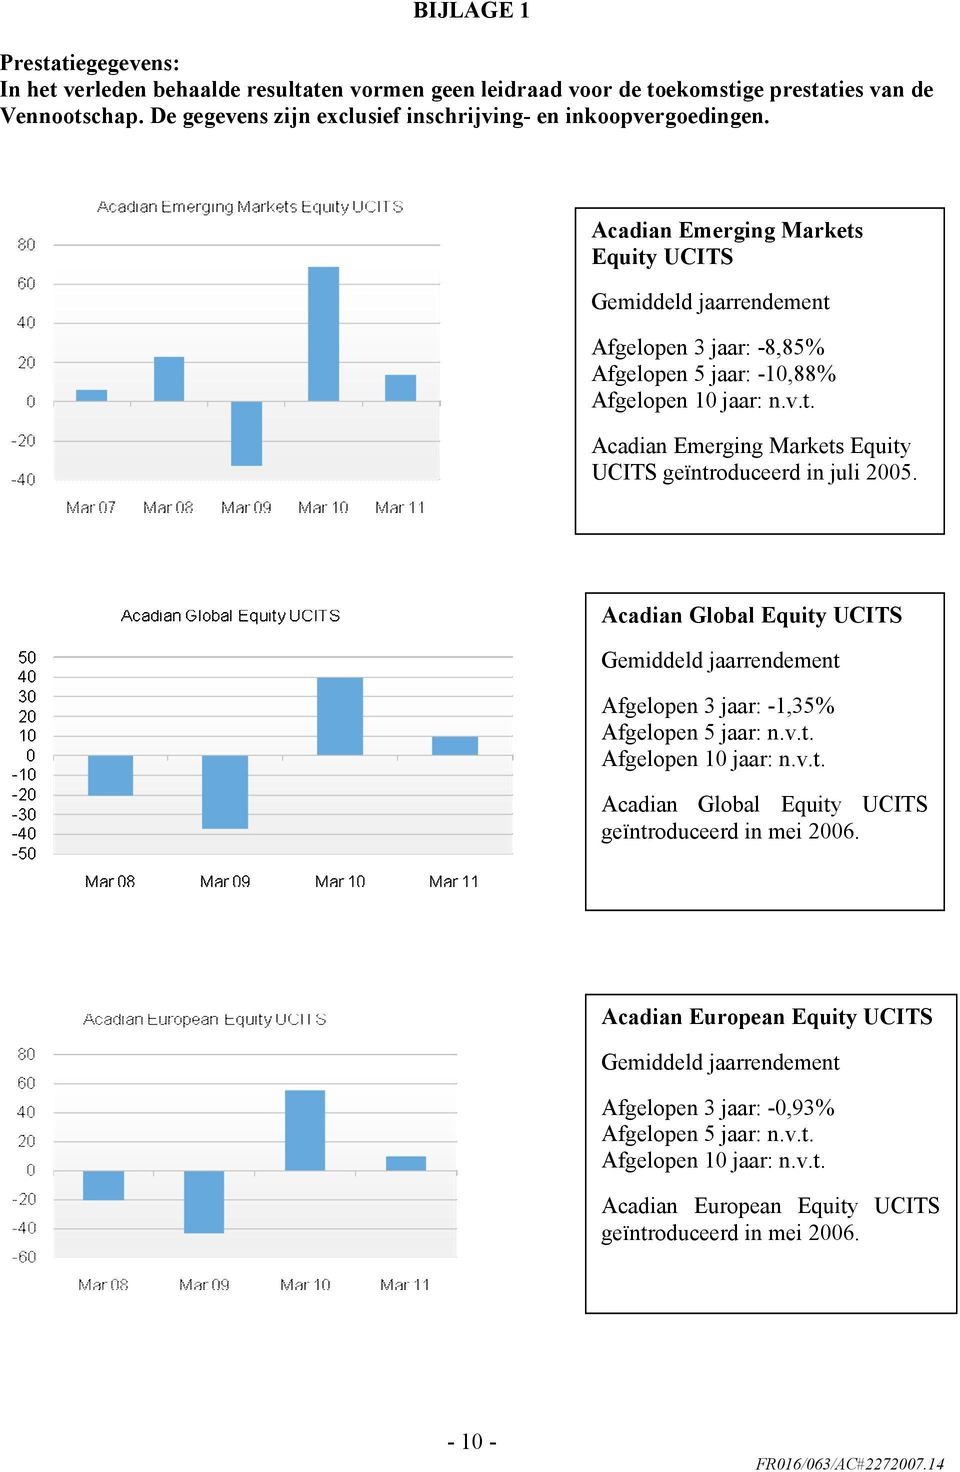 Acadian Emerging Markets Equity UCITS Gemiddeld jaarrendement Afgelopen 3 jaar: -8,85% Afgelopen 5 jaar: -10,88% Afgelopen 10 jaar: n.v.t. Acadian Emerging Markets Equity UCITS geïntroduceerd in juli 2005.